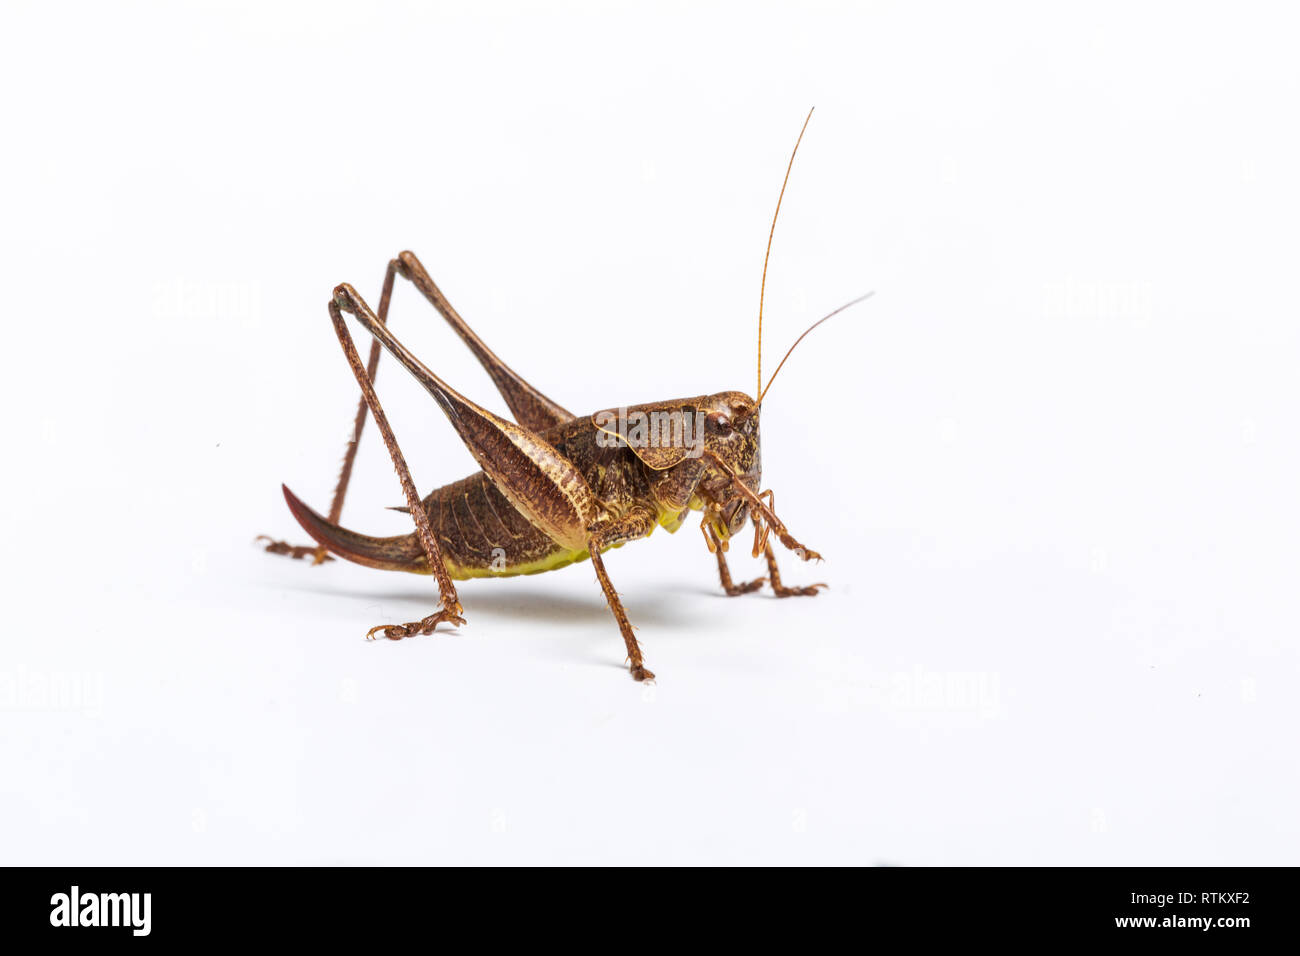 Dark Bush Cricket, Pholidoptera griseoaptera, female, Whitelye, Monmouthshire, Wales, UK Stock Photo